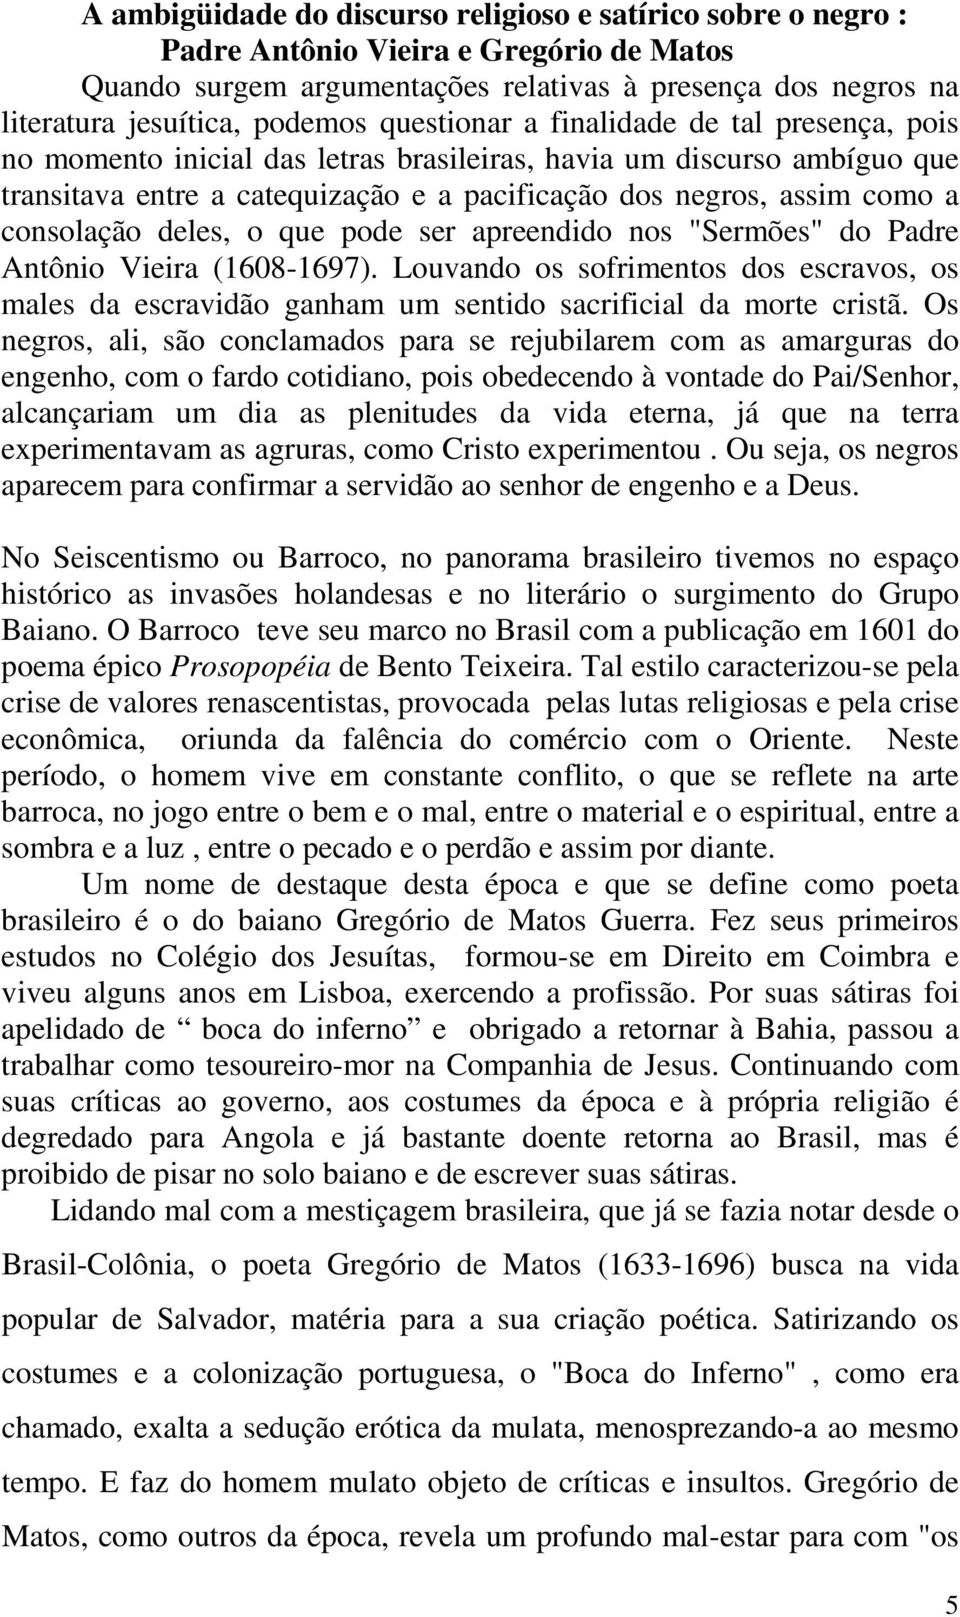 consolação deles, o que pode ser apreendido nos "Sermões" do Padre Antônio Vieira (1608-1697).